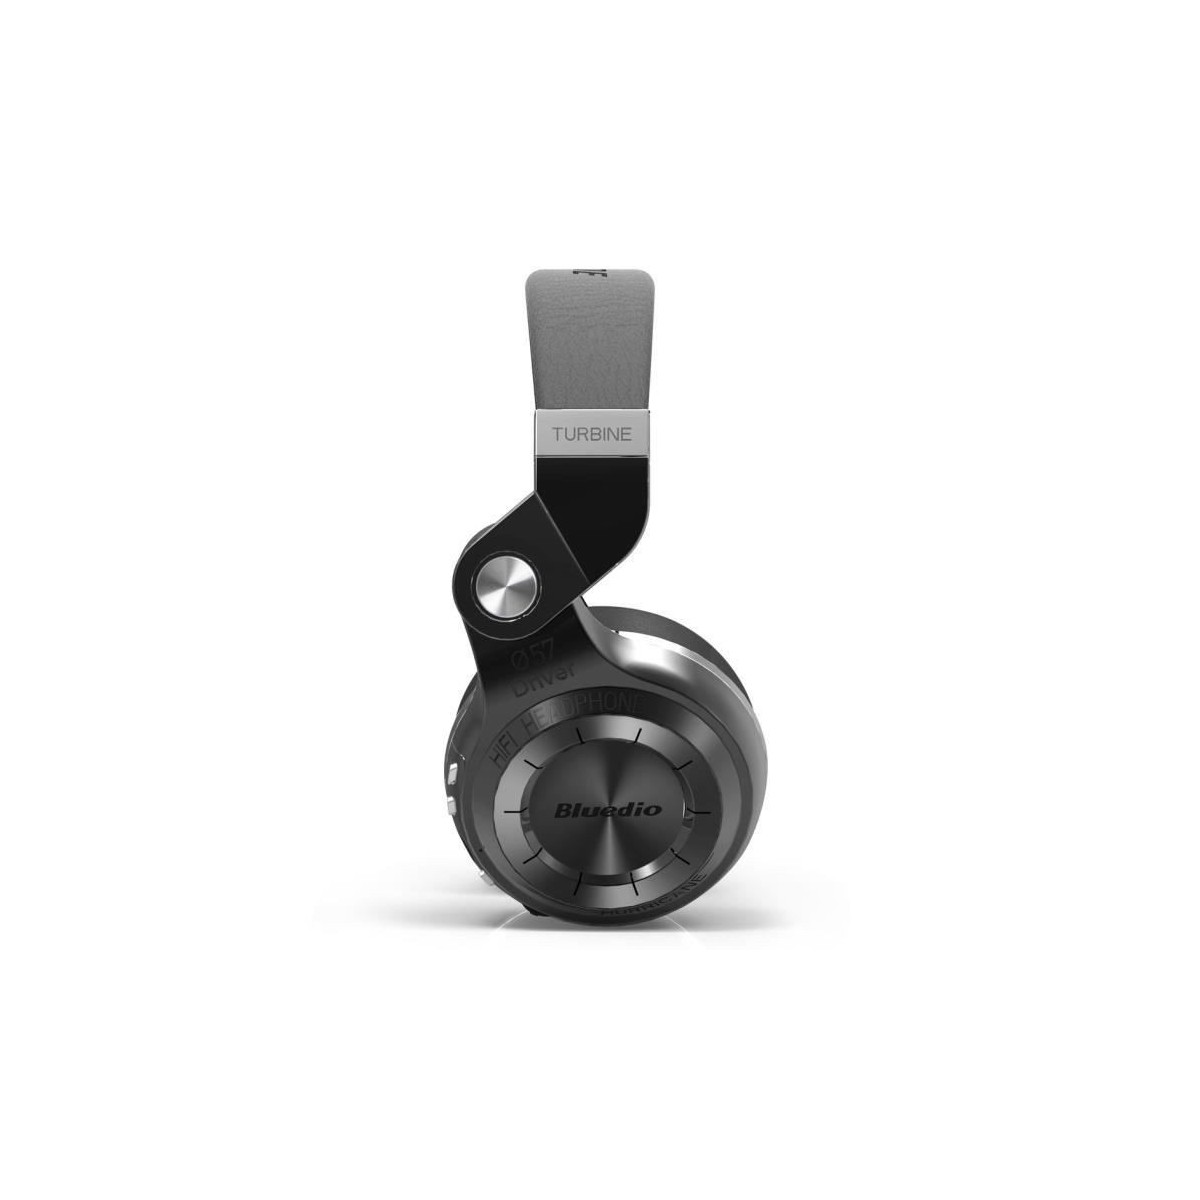 Casque Bluetooth Bluedio T2S stéréo sans fil écouteur microphone intégré Noir